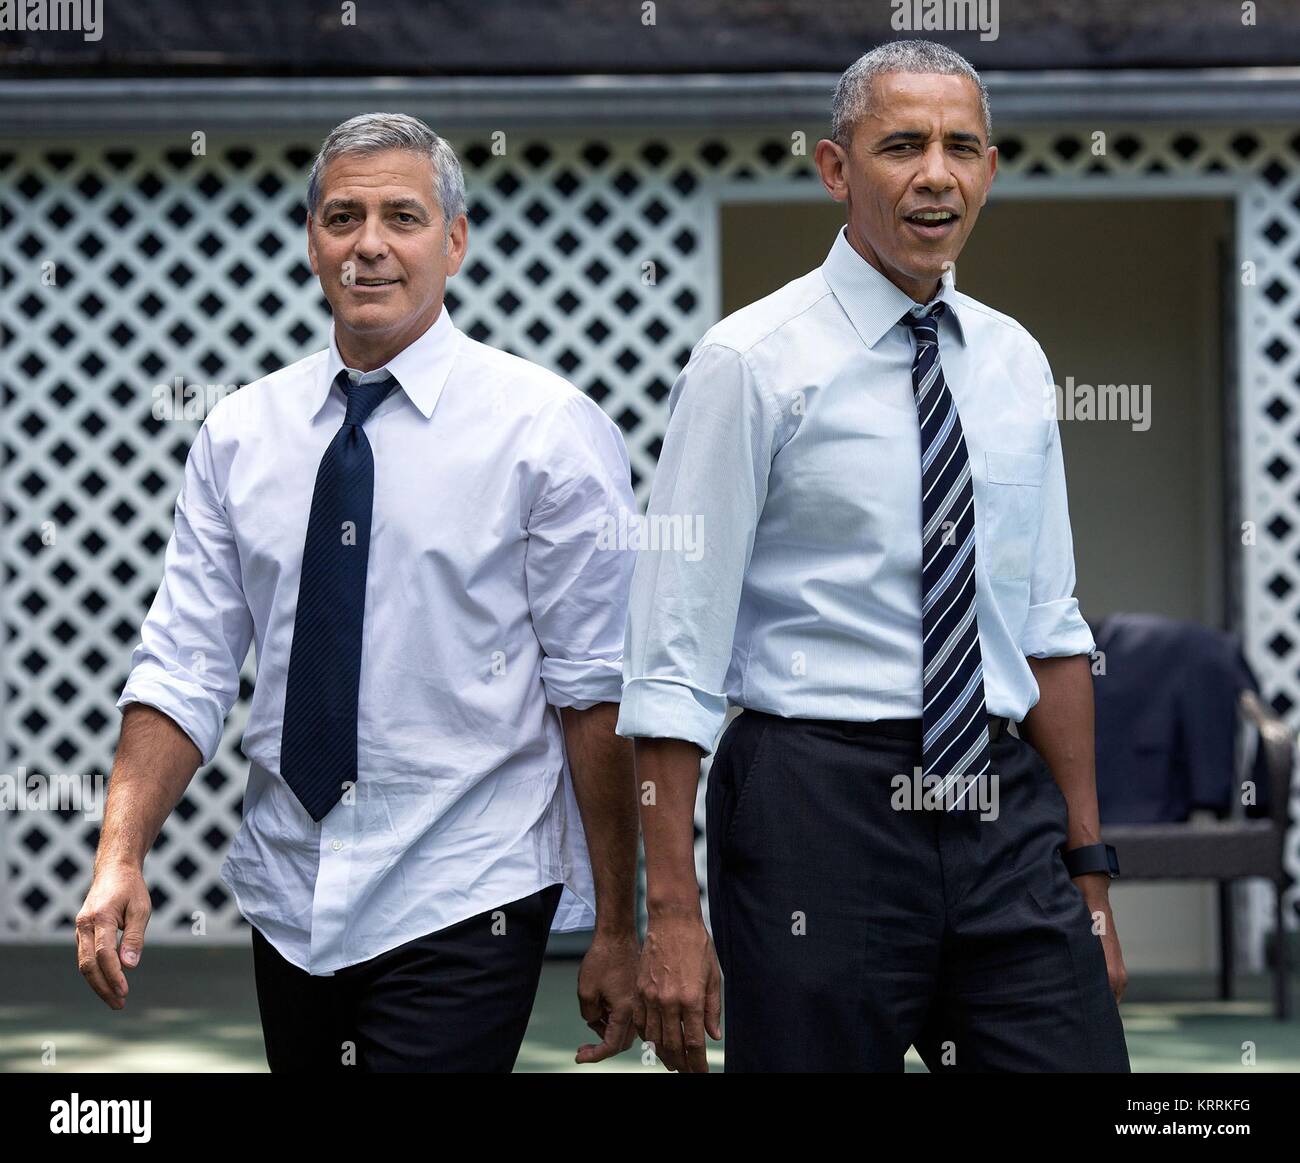 Schauspieler George Clooney (links) und US-Präsident Barack Obama Basketball spielen im Weißen Haus am 12. September 2016 in Washington, DC. Stockfoto